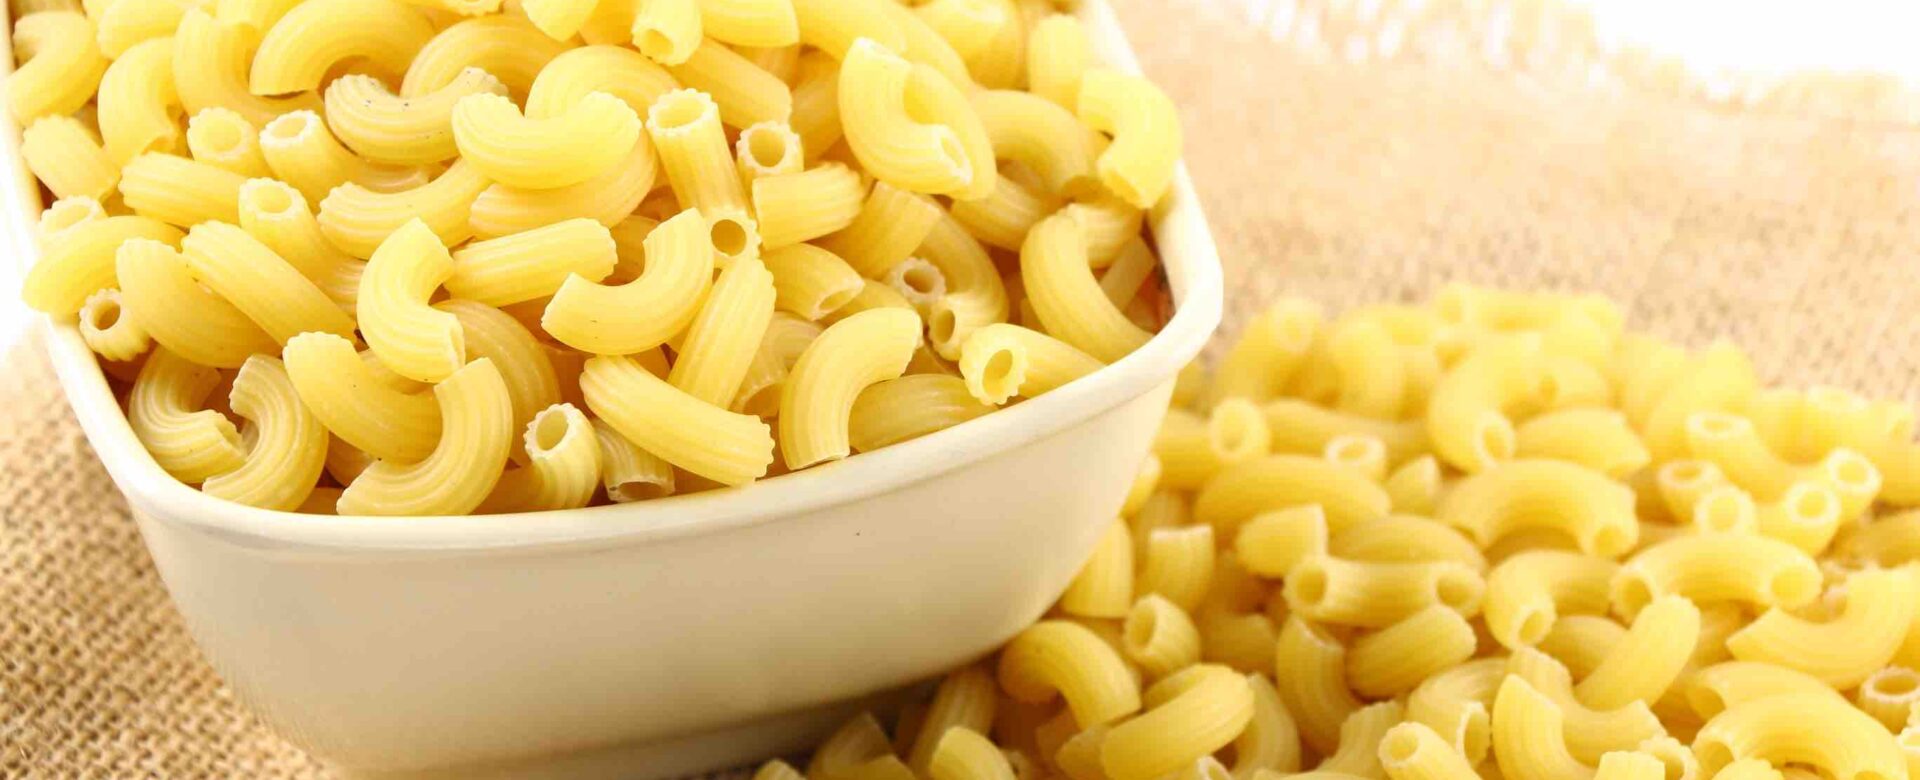 Waar is macaroni van gemaakt?